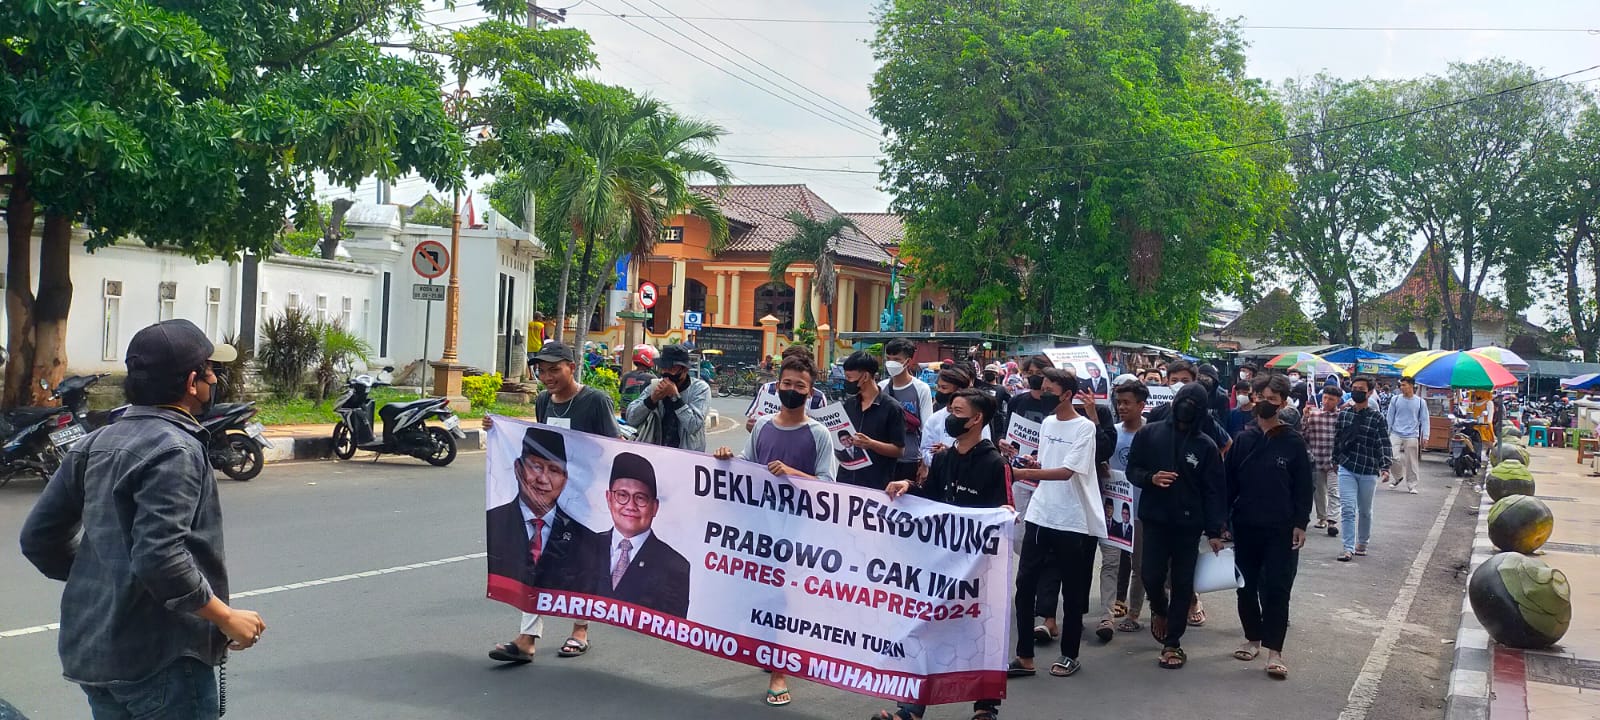 Sejumlah pemuda membentangkan banner dukung ke Prabowo Subianto dan Muhaimin ISkandar untuk maju dalam Pilpres 2024 pada Kamis (23/6/2022).